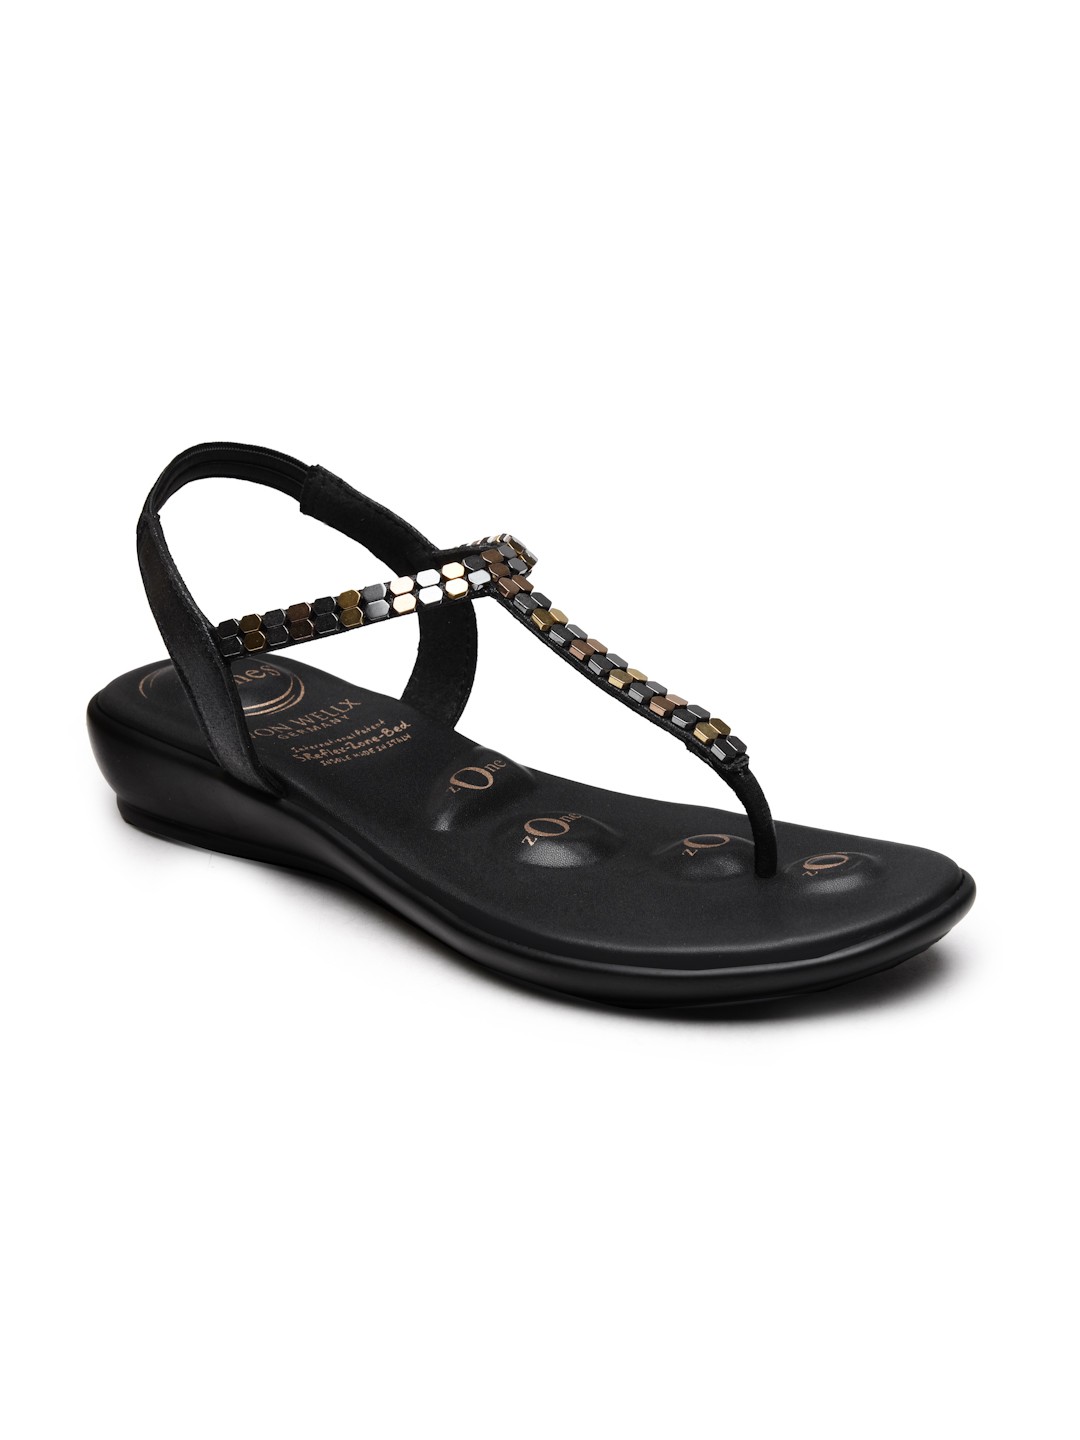 Buy Von Wellx Germany Comfort Women's Black Casual Sandals Regina Online in Ahmedabad